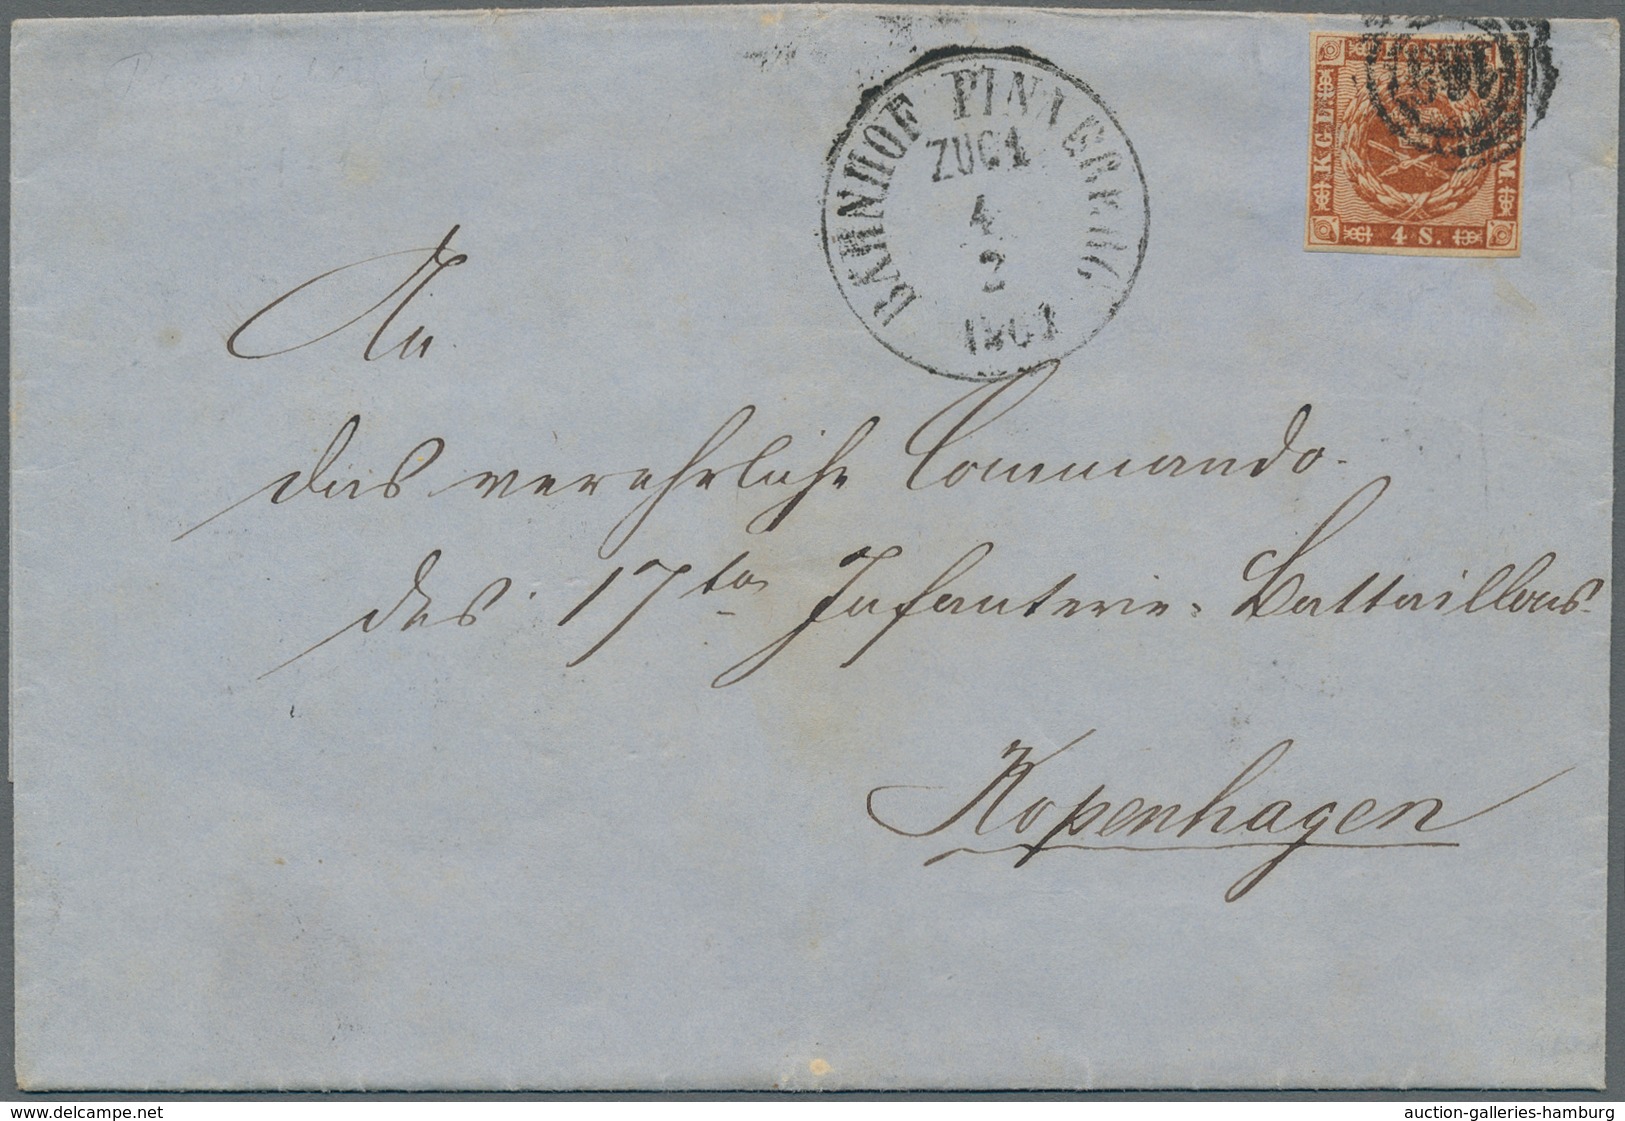 Baden - Marken und Briefe: 1851-1868, gestempelte Sammlung auf losen Albumseiten mit etlichen besser